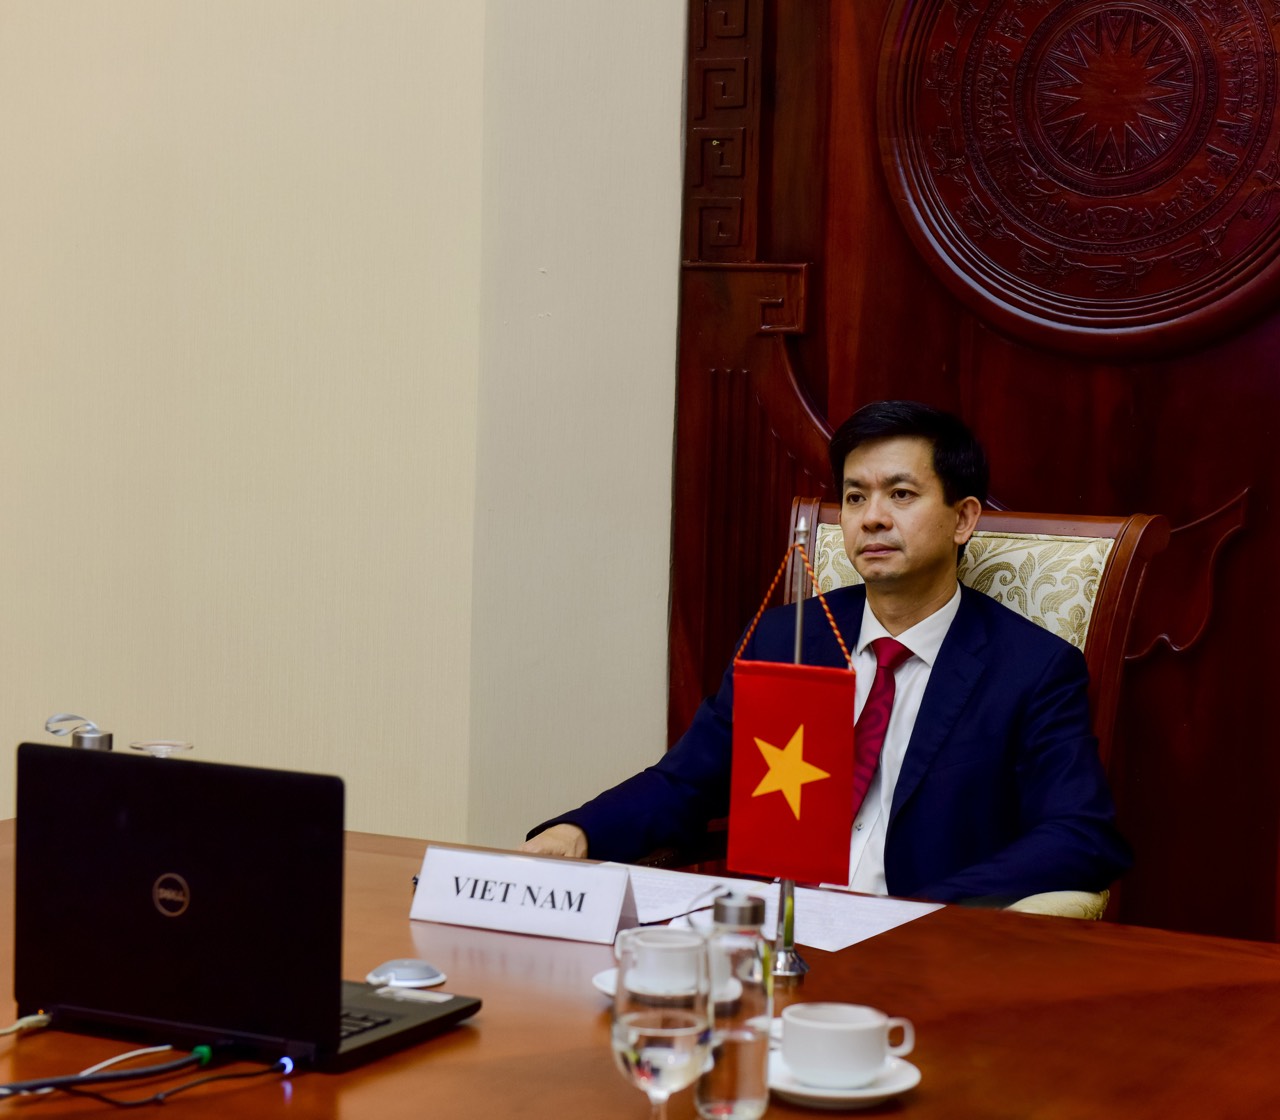 Thứ trưởng Bộ Văn hóa, Thể thao và Du lịch Lê Quang Tùng đại diện Việt Nam tham dự Hội nghị